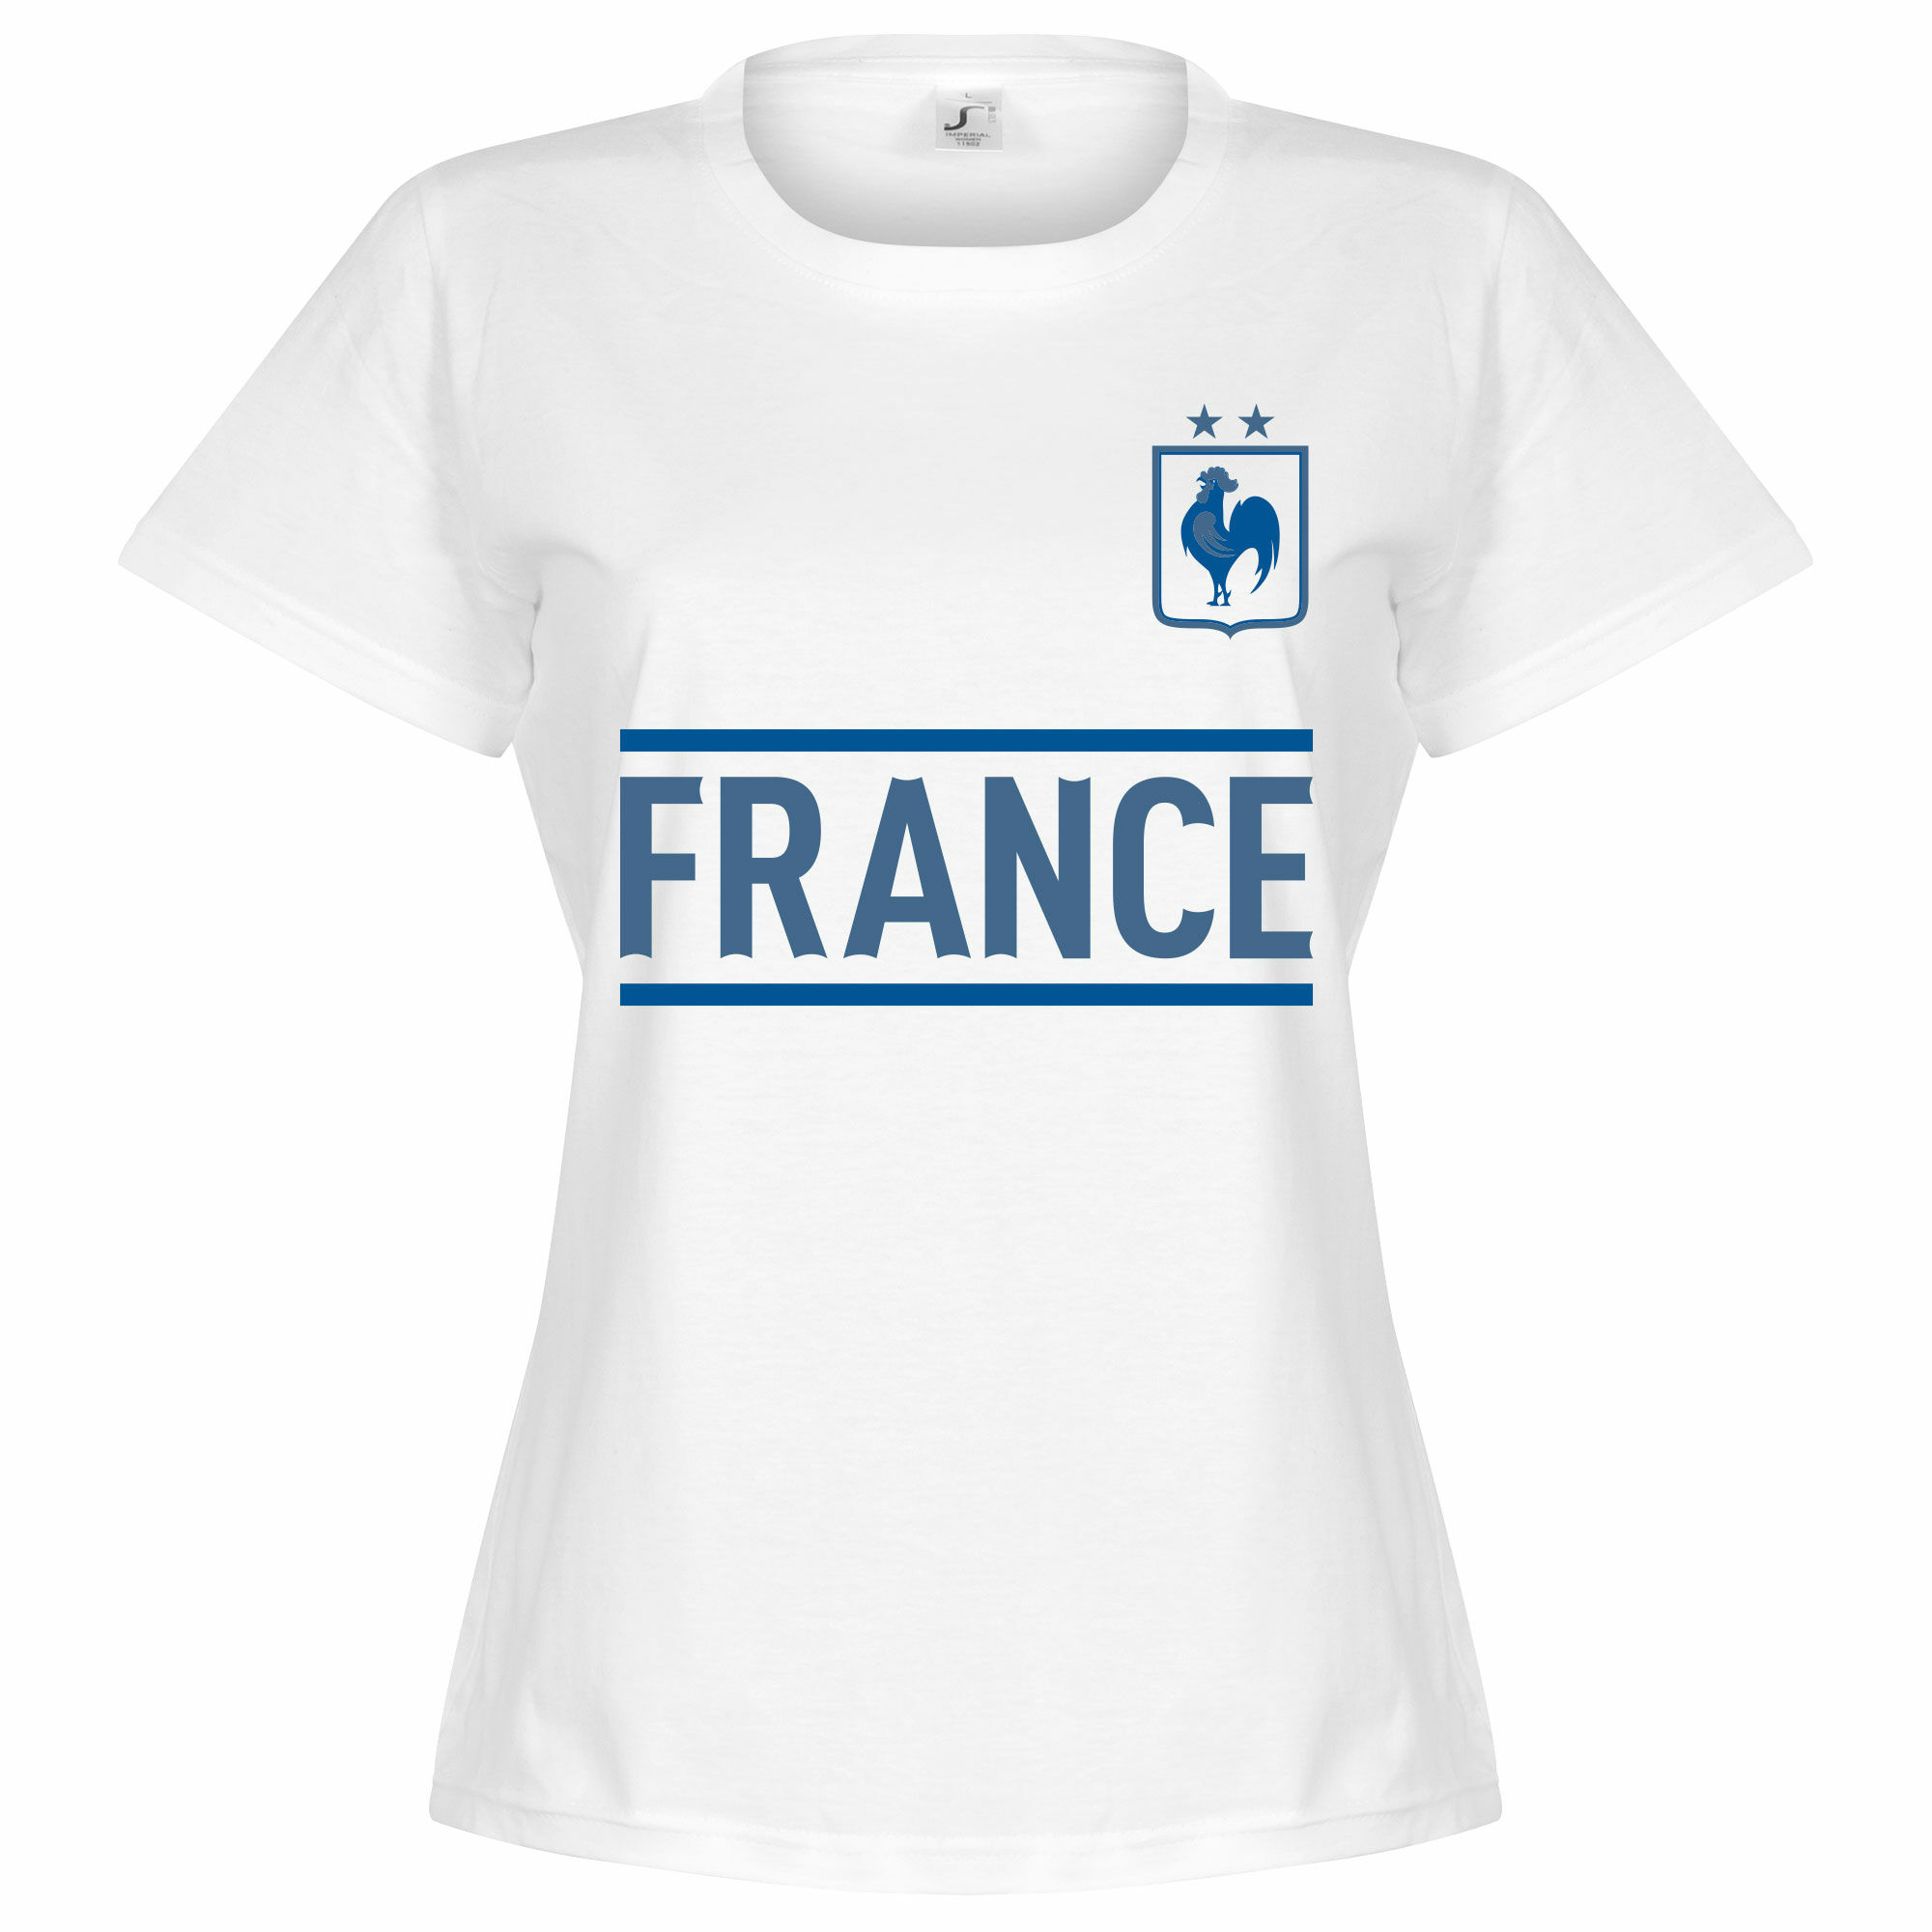 Francie - Tričko dámské - bílé